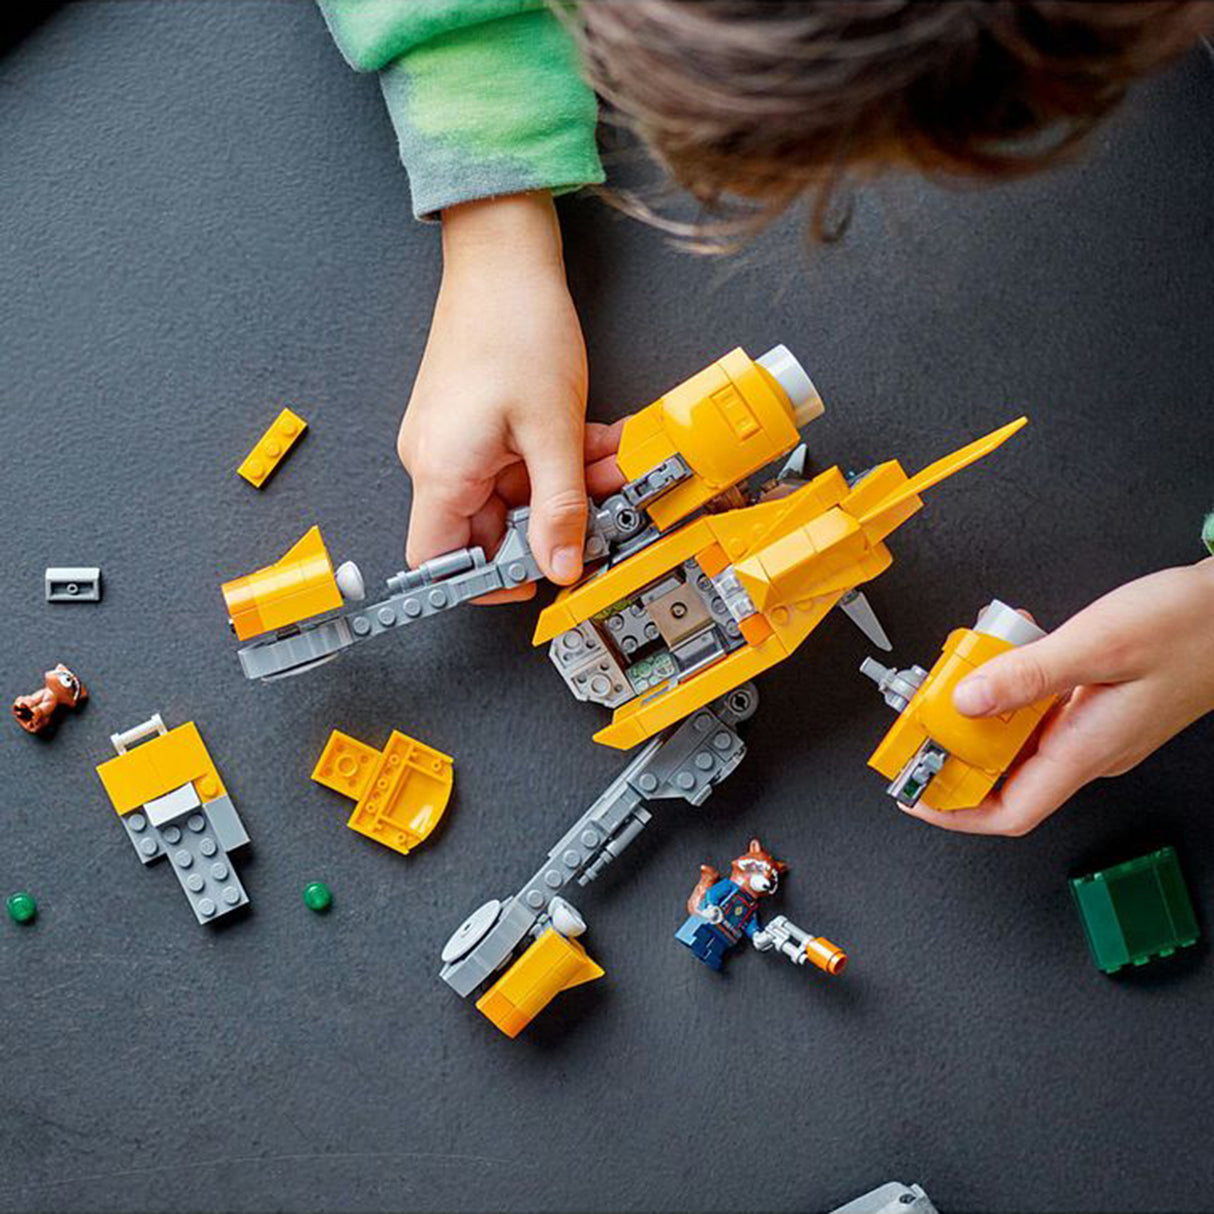 LEGO Marvel Baby Rocket's Ship 76254 (330 pieces)